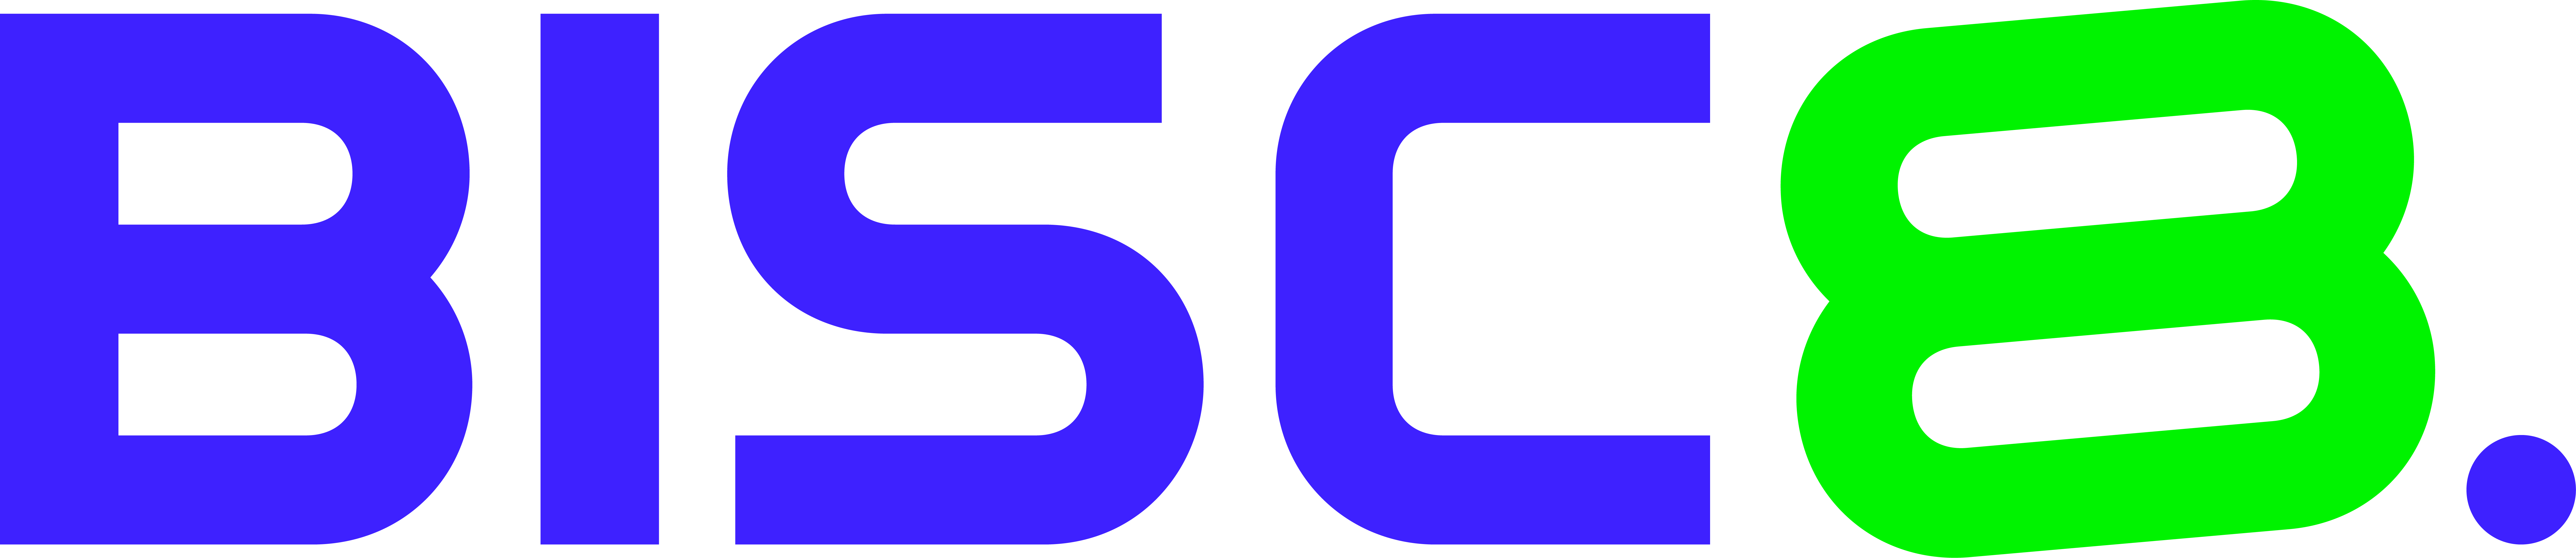 logo 1 bisc8